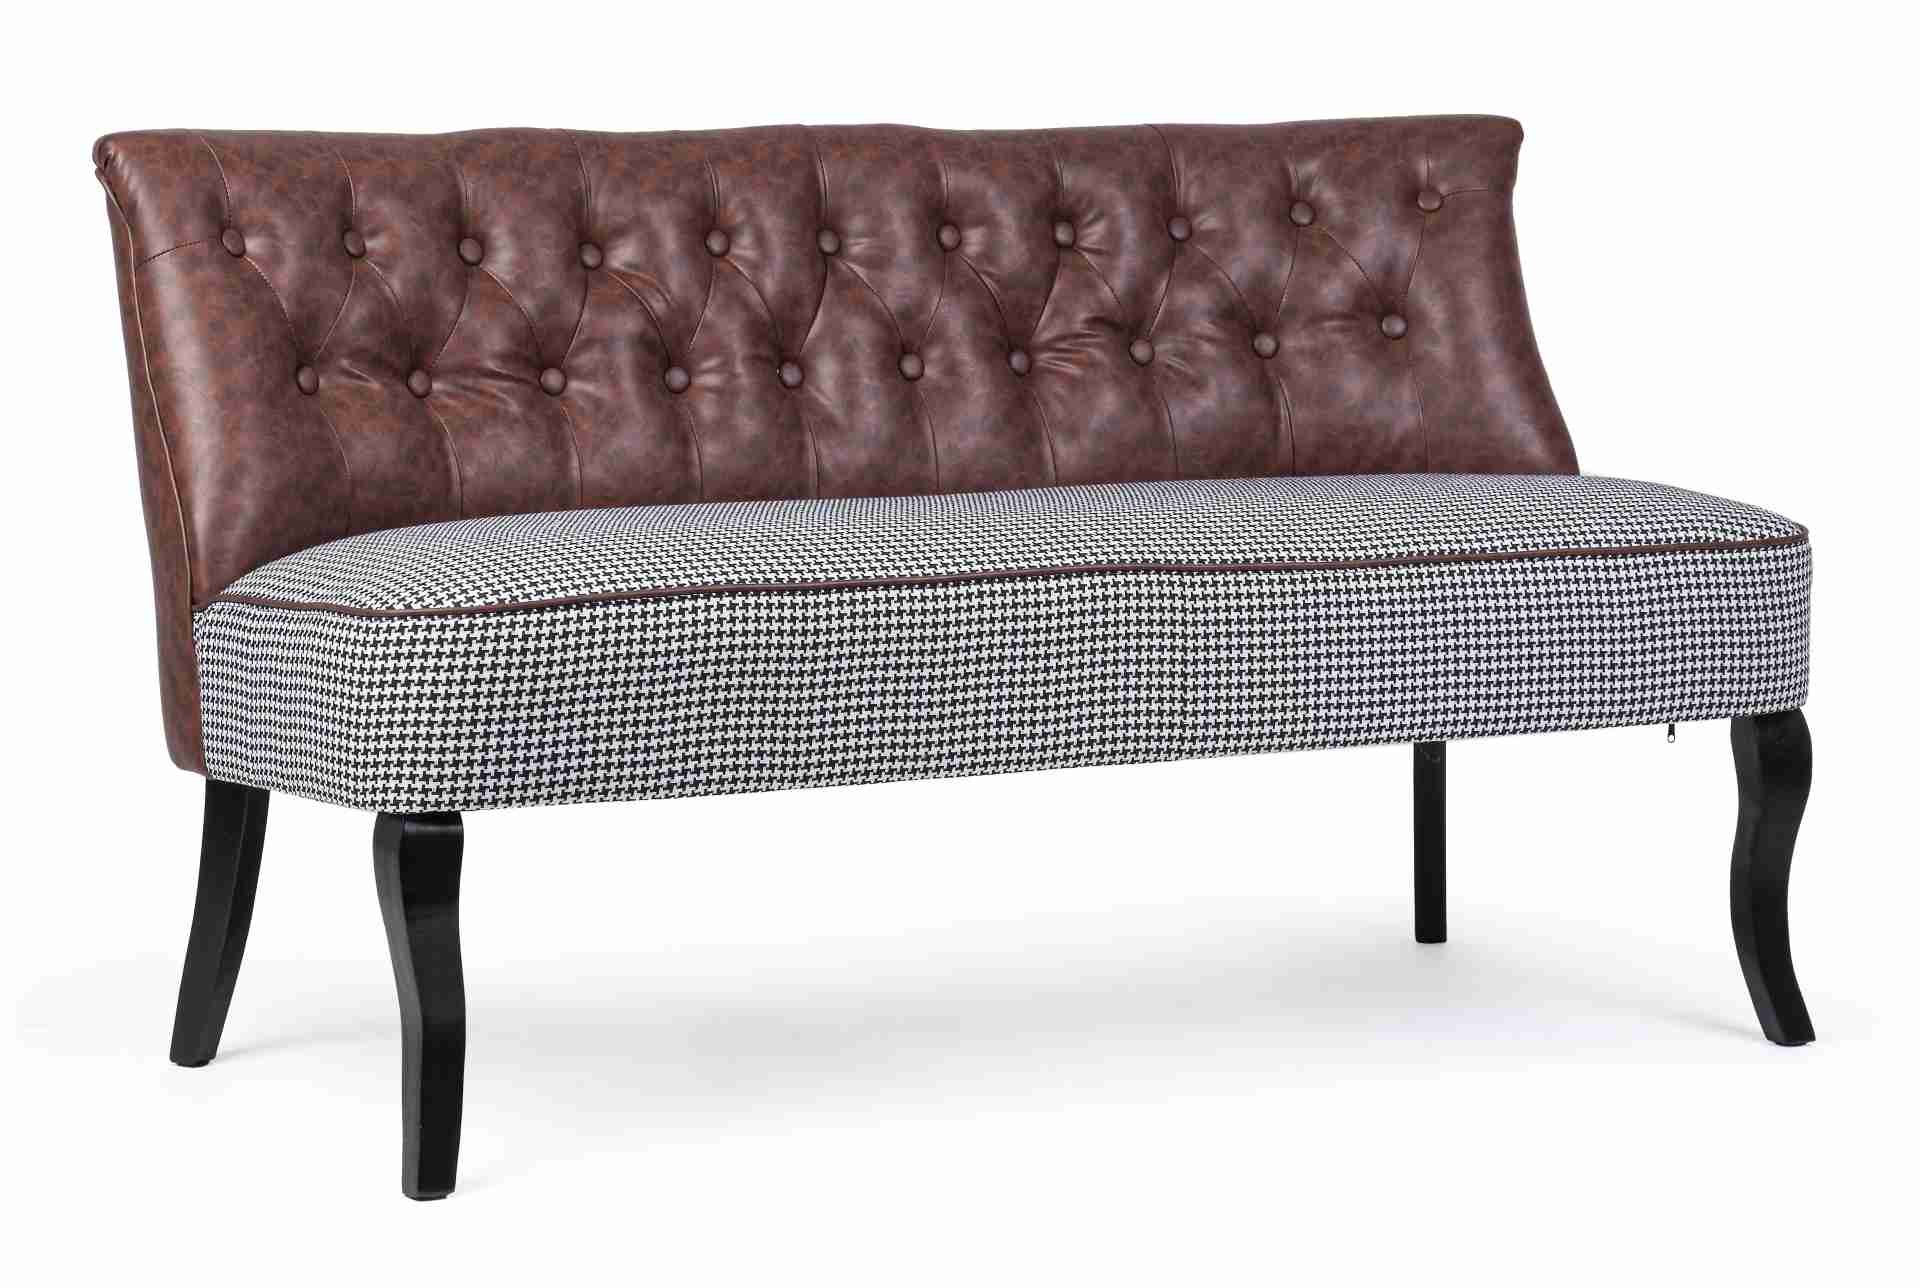 Das Sofa Batilda überzeugt mit seinem klassischen Design. Gefertigt wurde es aus Kunstleder, welches einen roten Farbton besitzt. Das Gestell ist aus Kiefernholz und hat eine schwarze Farbe. Das Sofa ist in der Ausführung als 2-Sitzer. Die Breite beträgt 